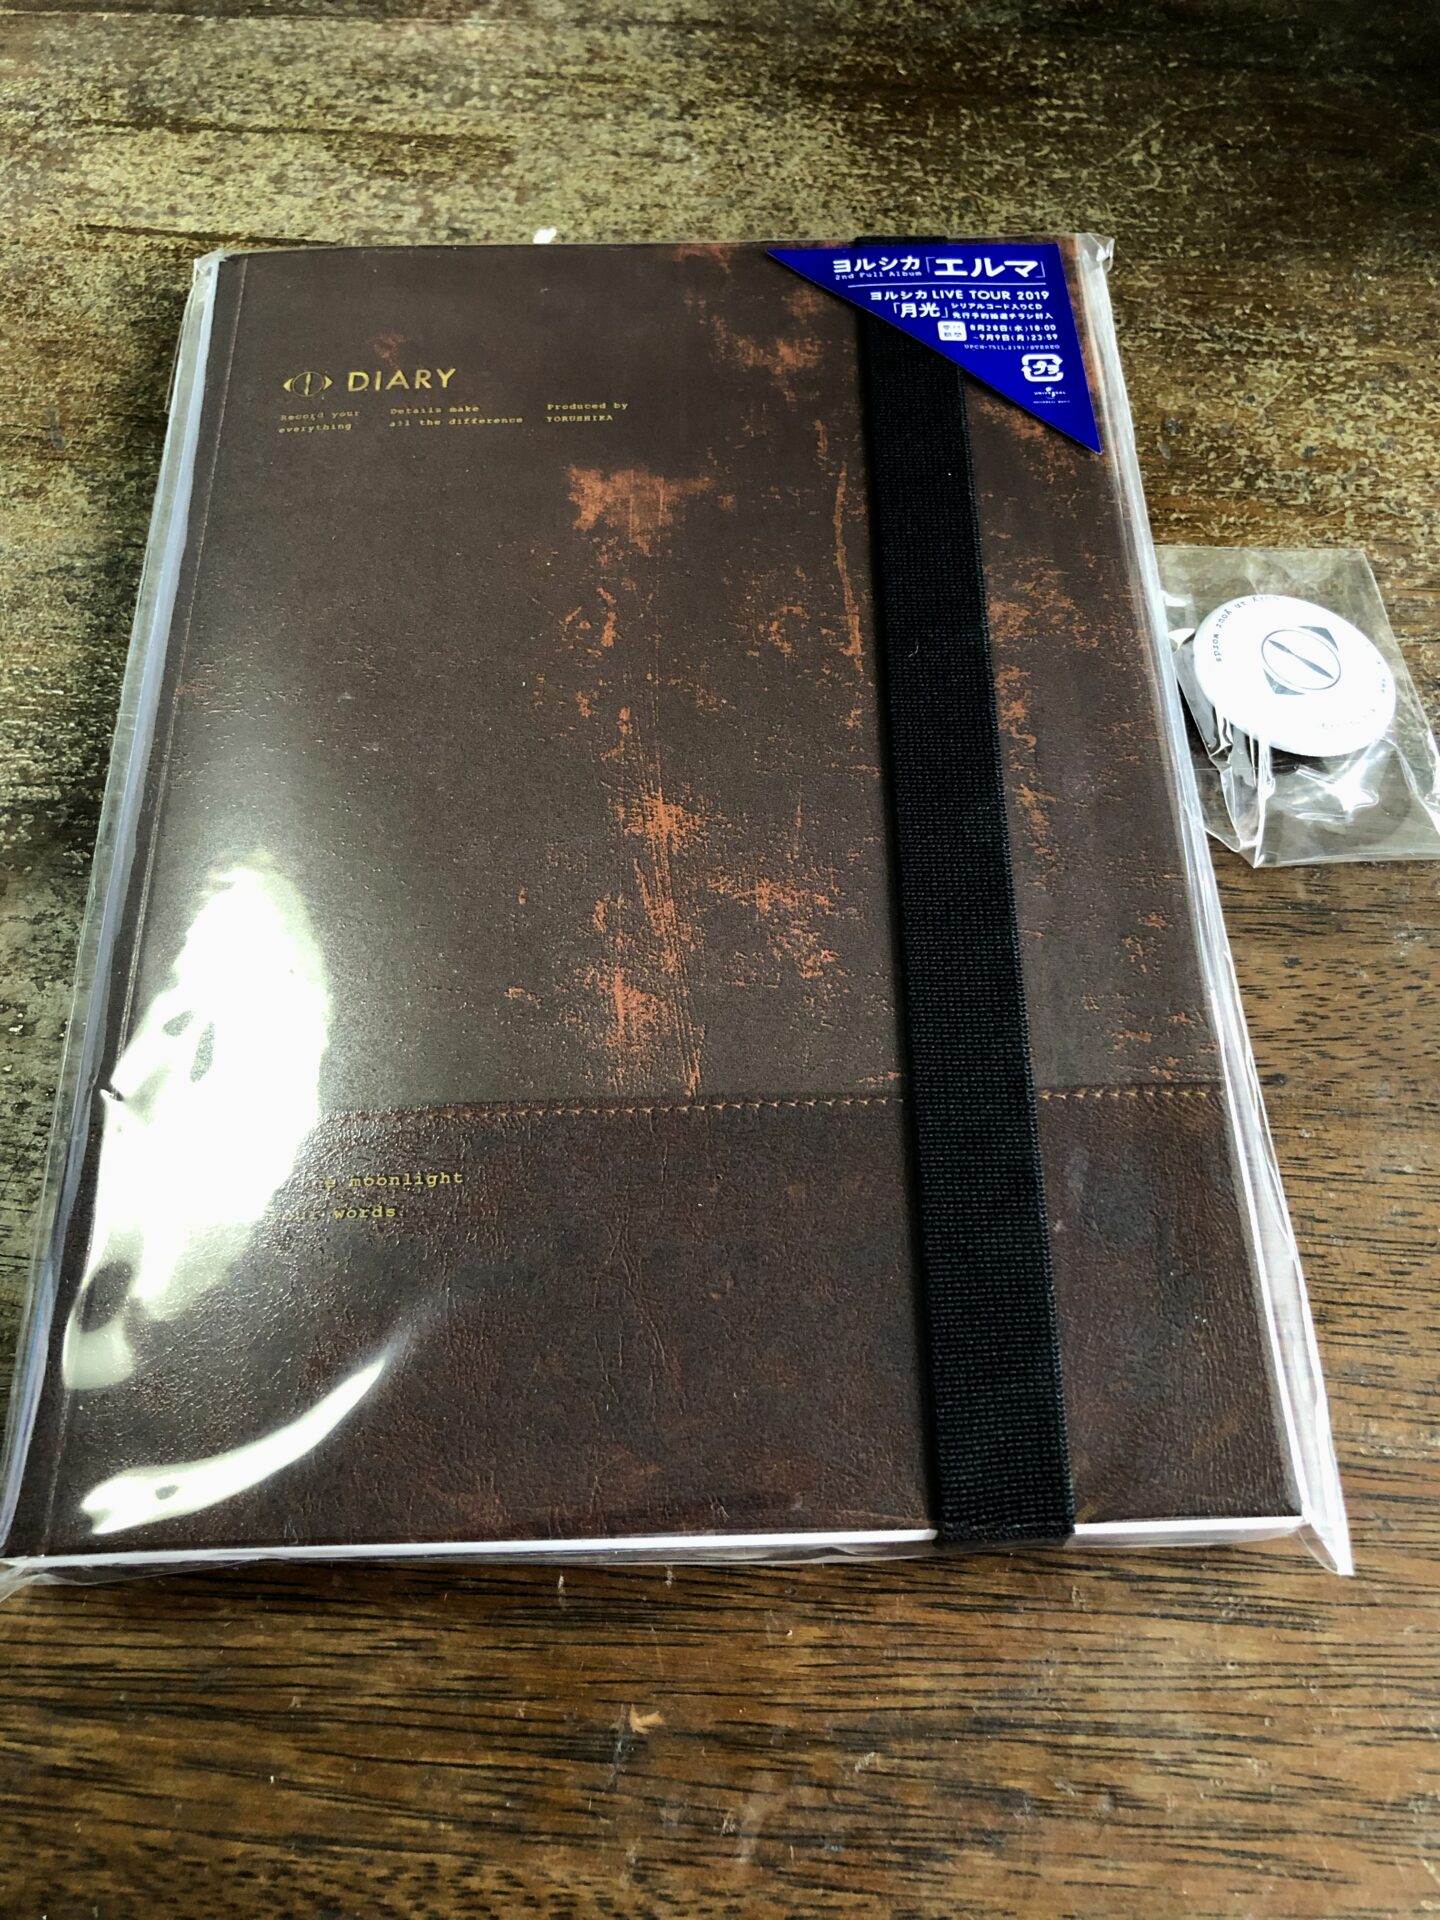 ヨルシカ   エルマ 初回限定盤 CD 写真 日記帳